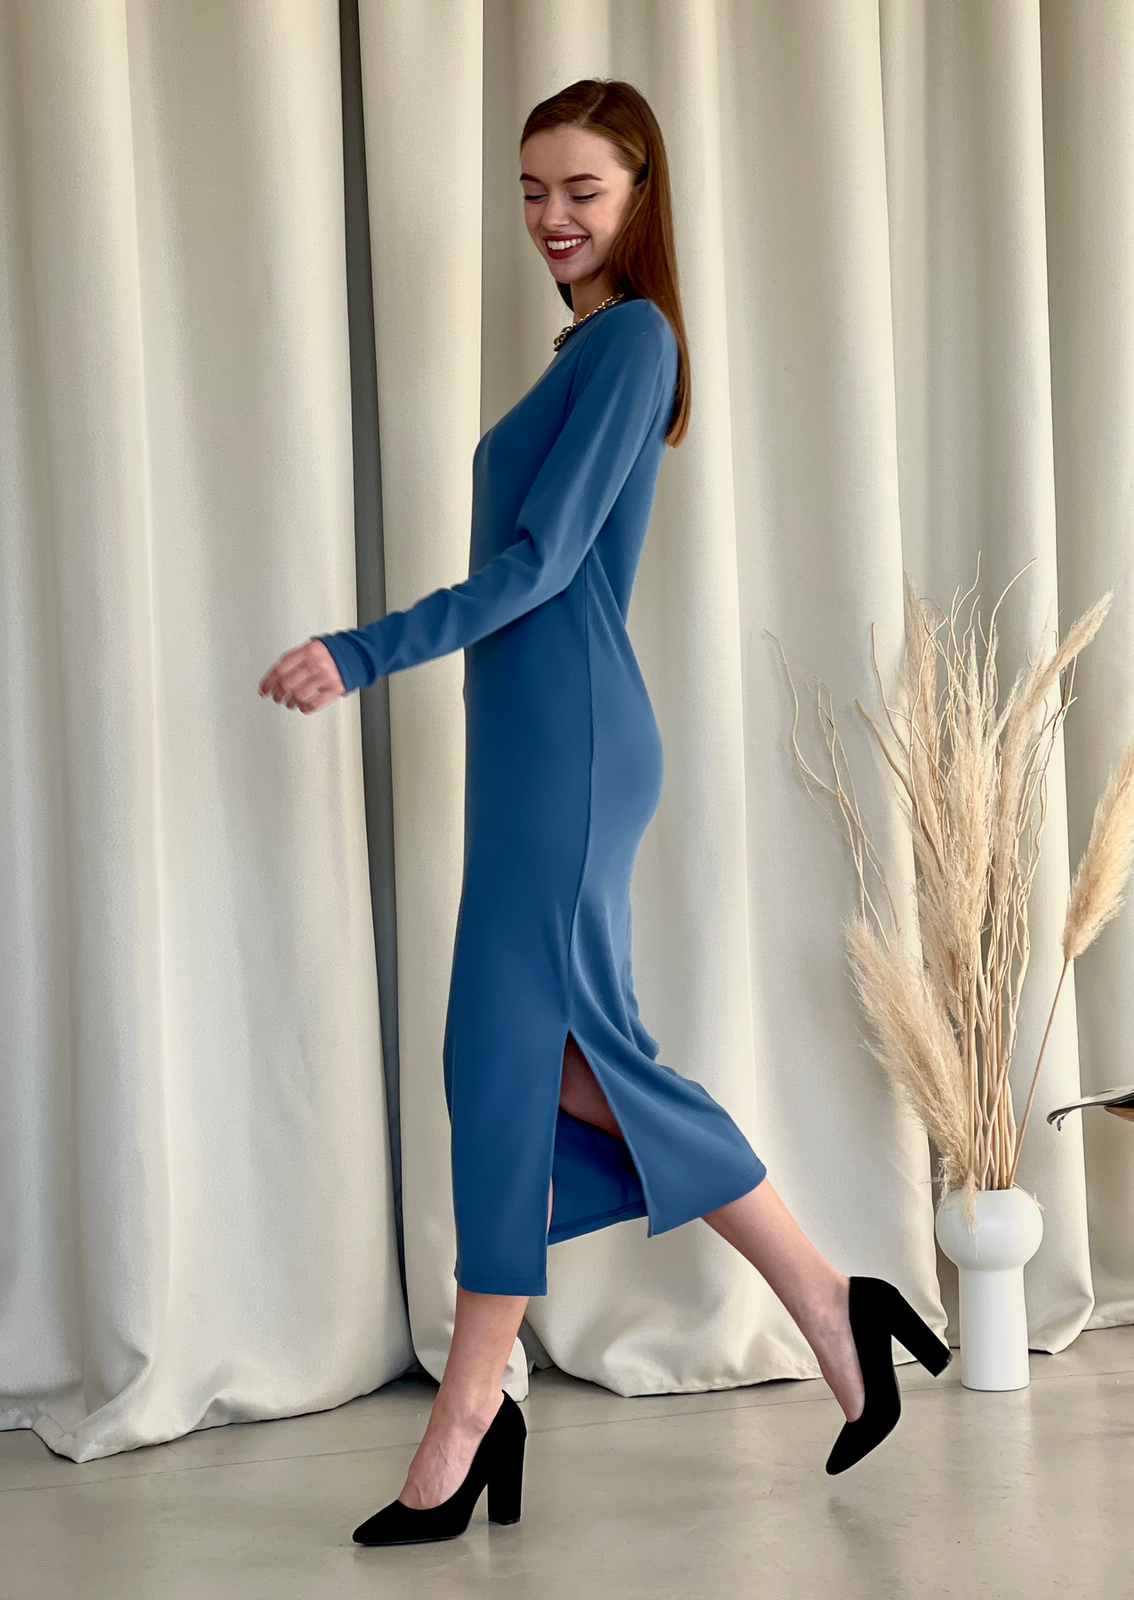 Купить Длинное платье синее в рубчик с длинным рукавом Merlini Кондо 700001165, размер 42-44 (S-M) в интернет-магазине